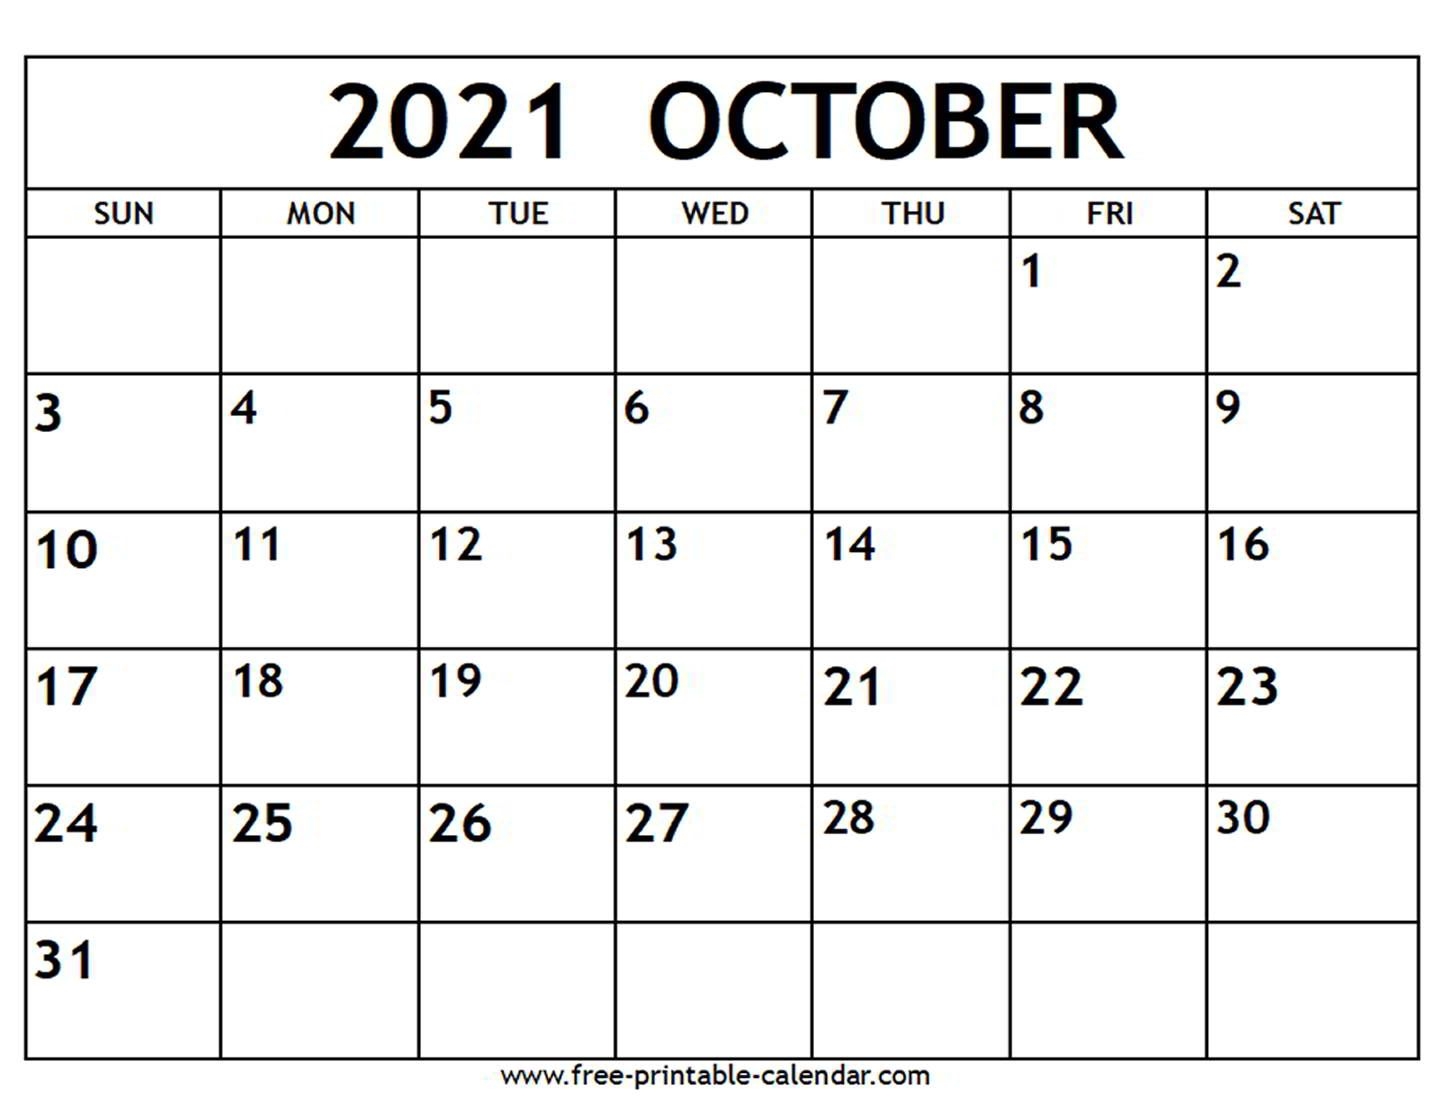 october 2021 calendar free printable calendar